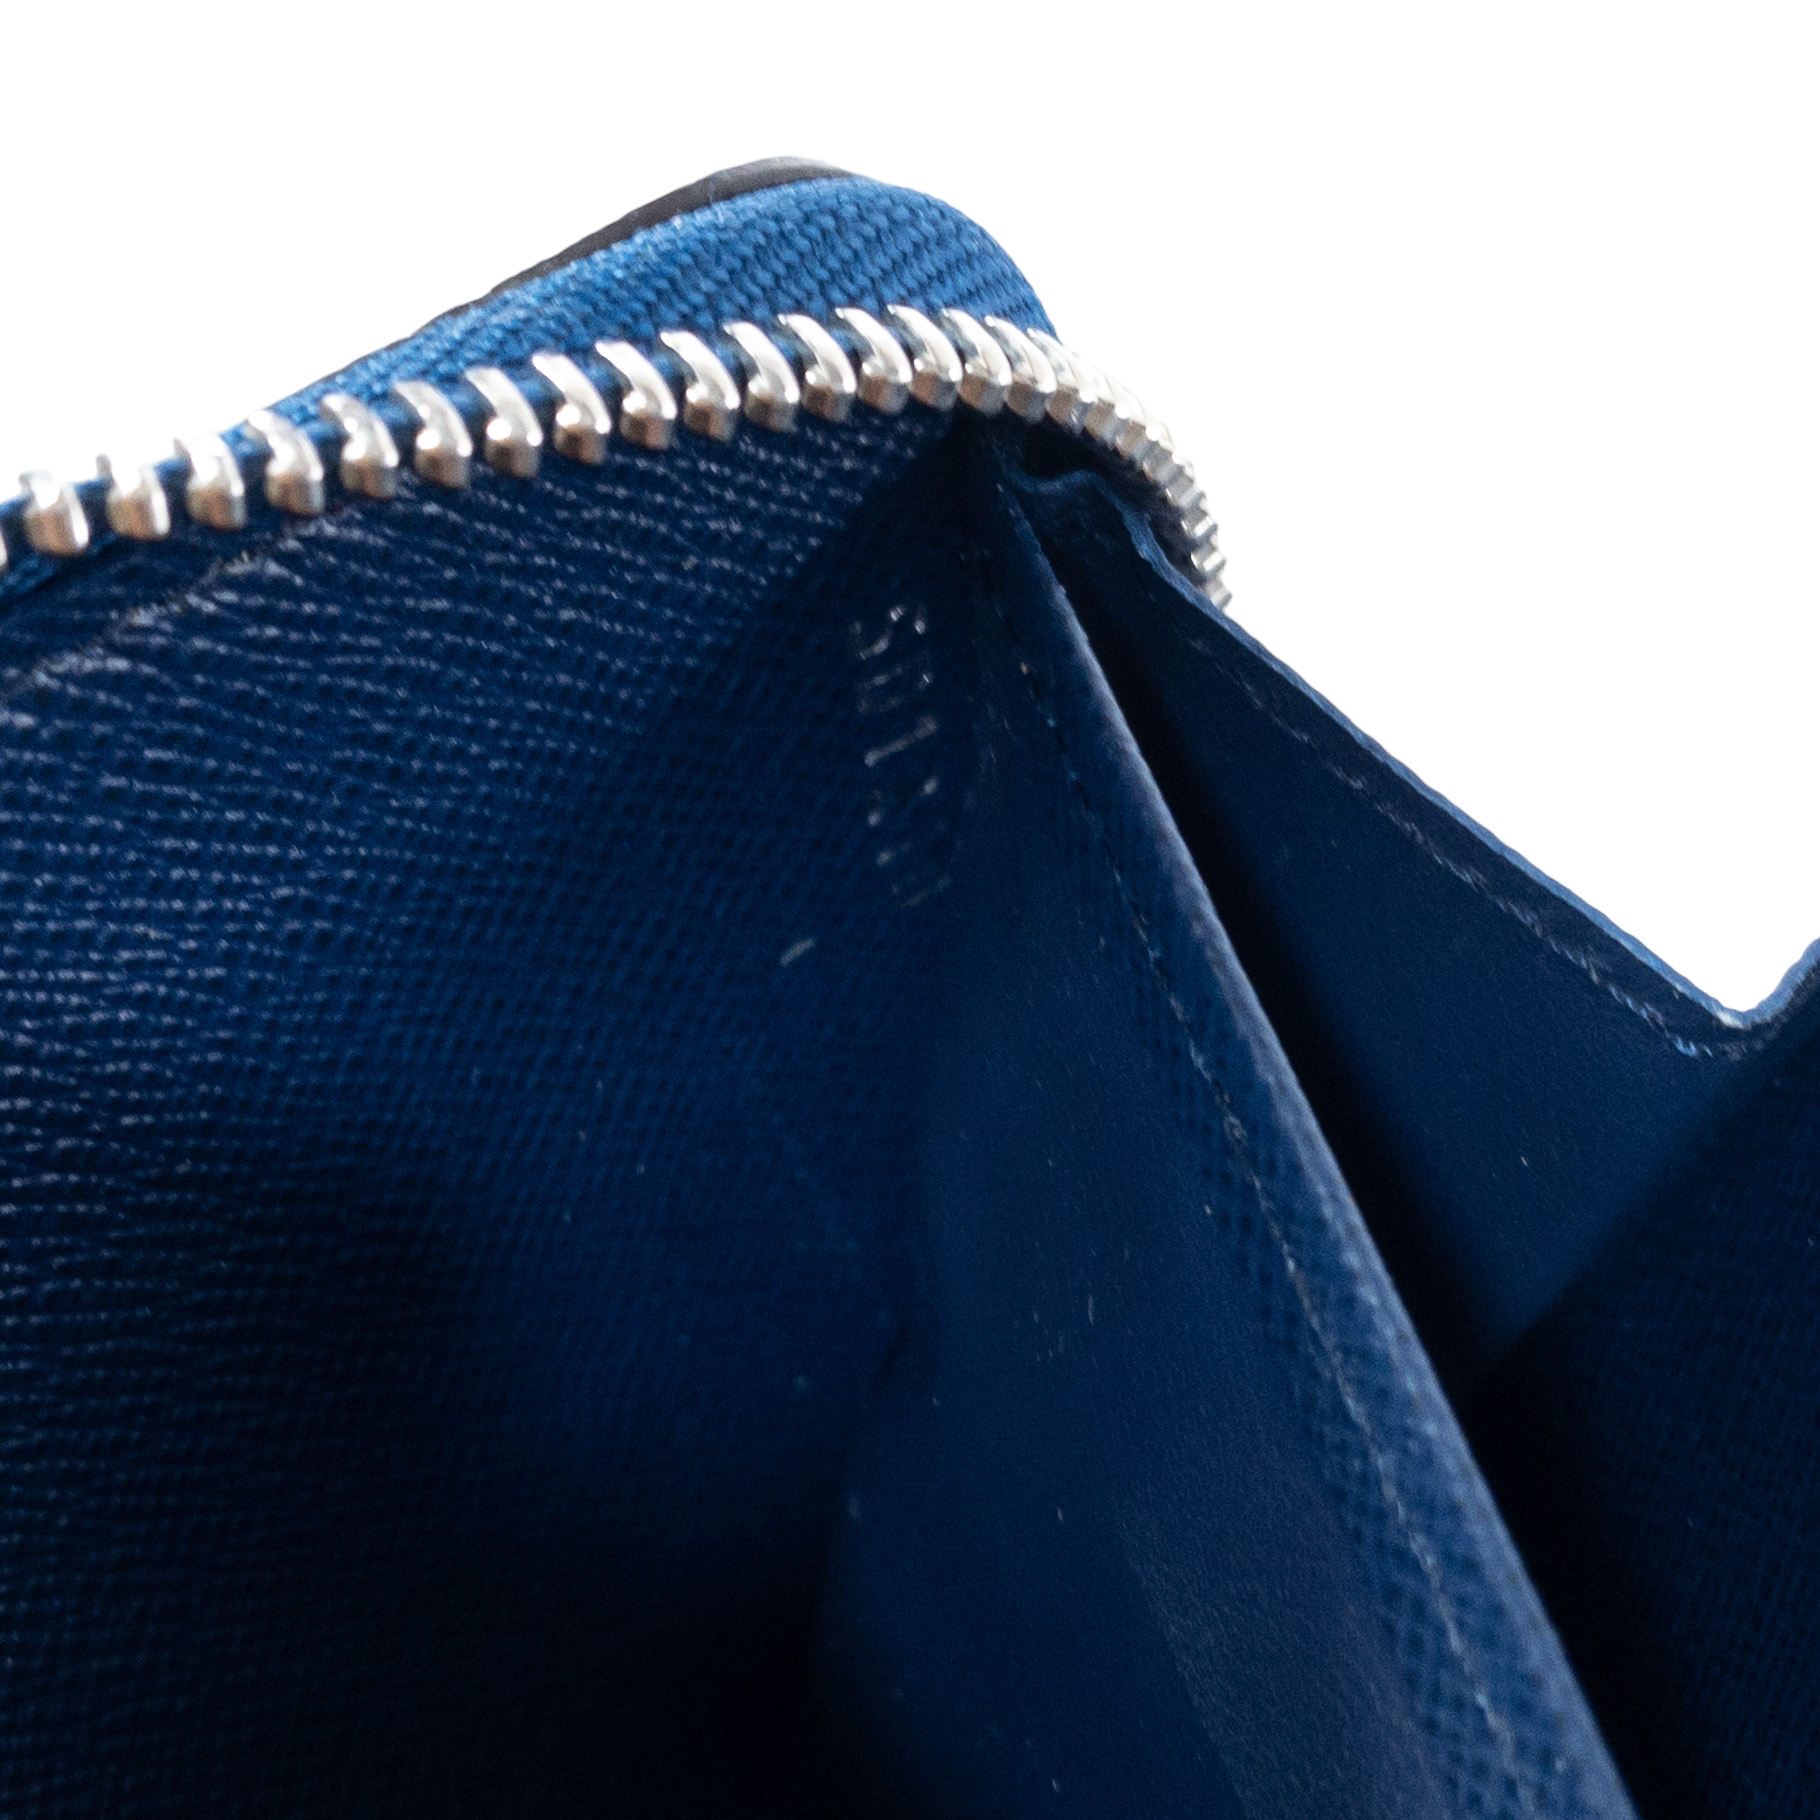 Louis Vuitton Articles de Voyage Pastel Blue Zippy Wallet — Otra